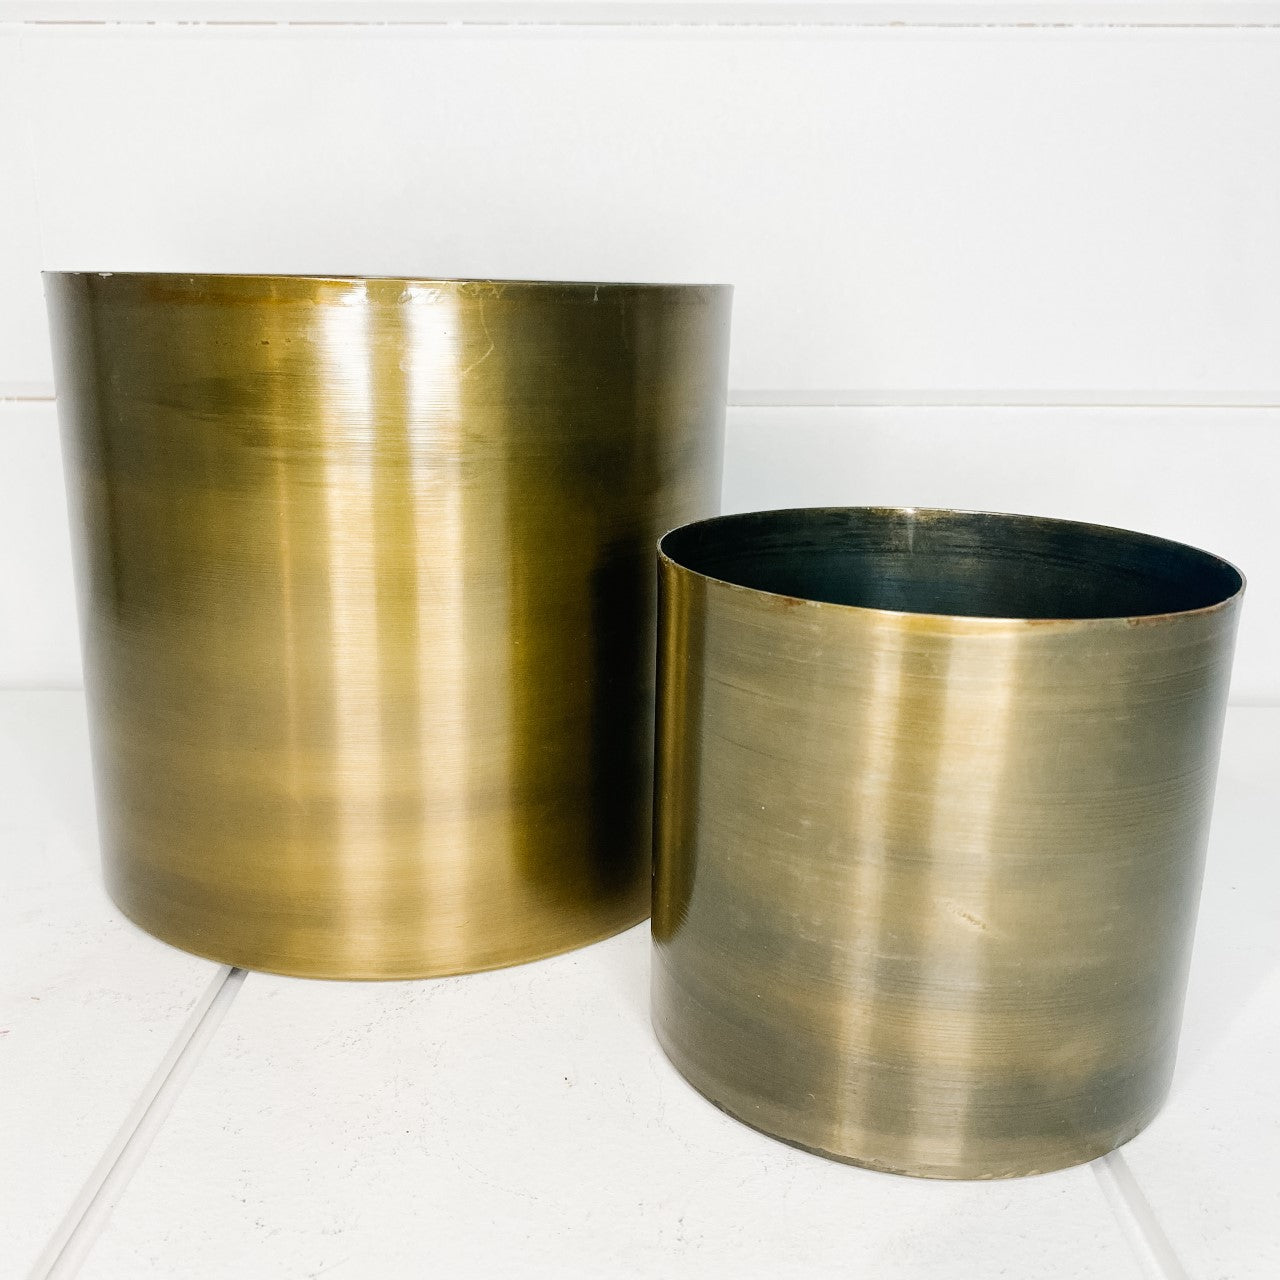 Antique gold metal plant pot - two sizes